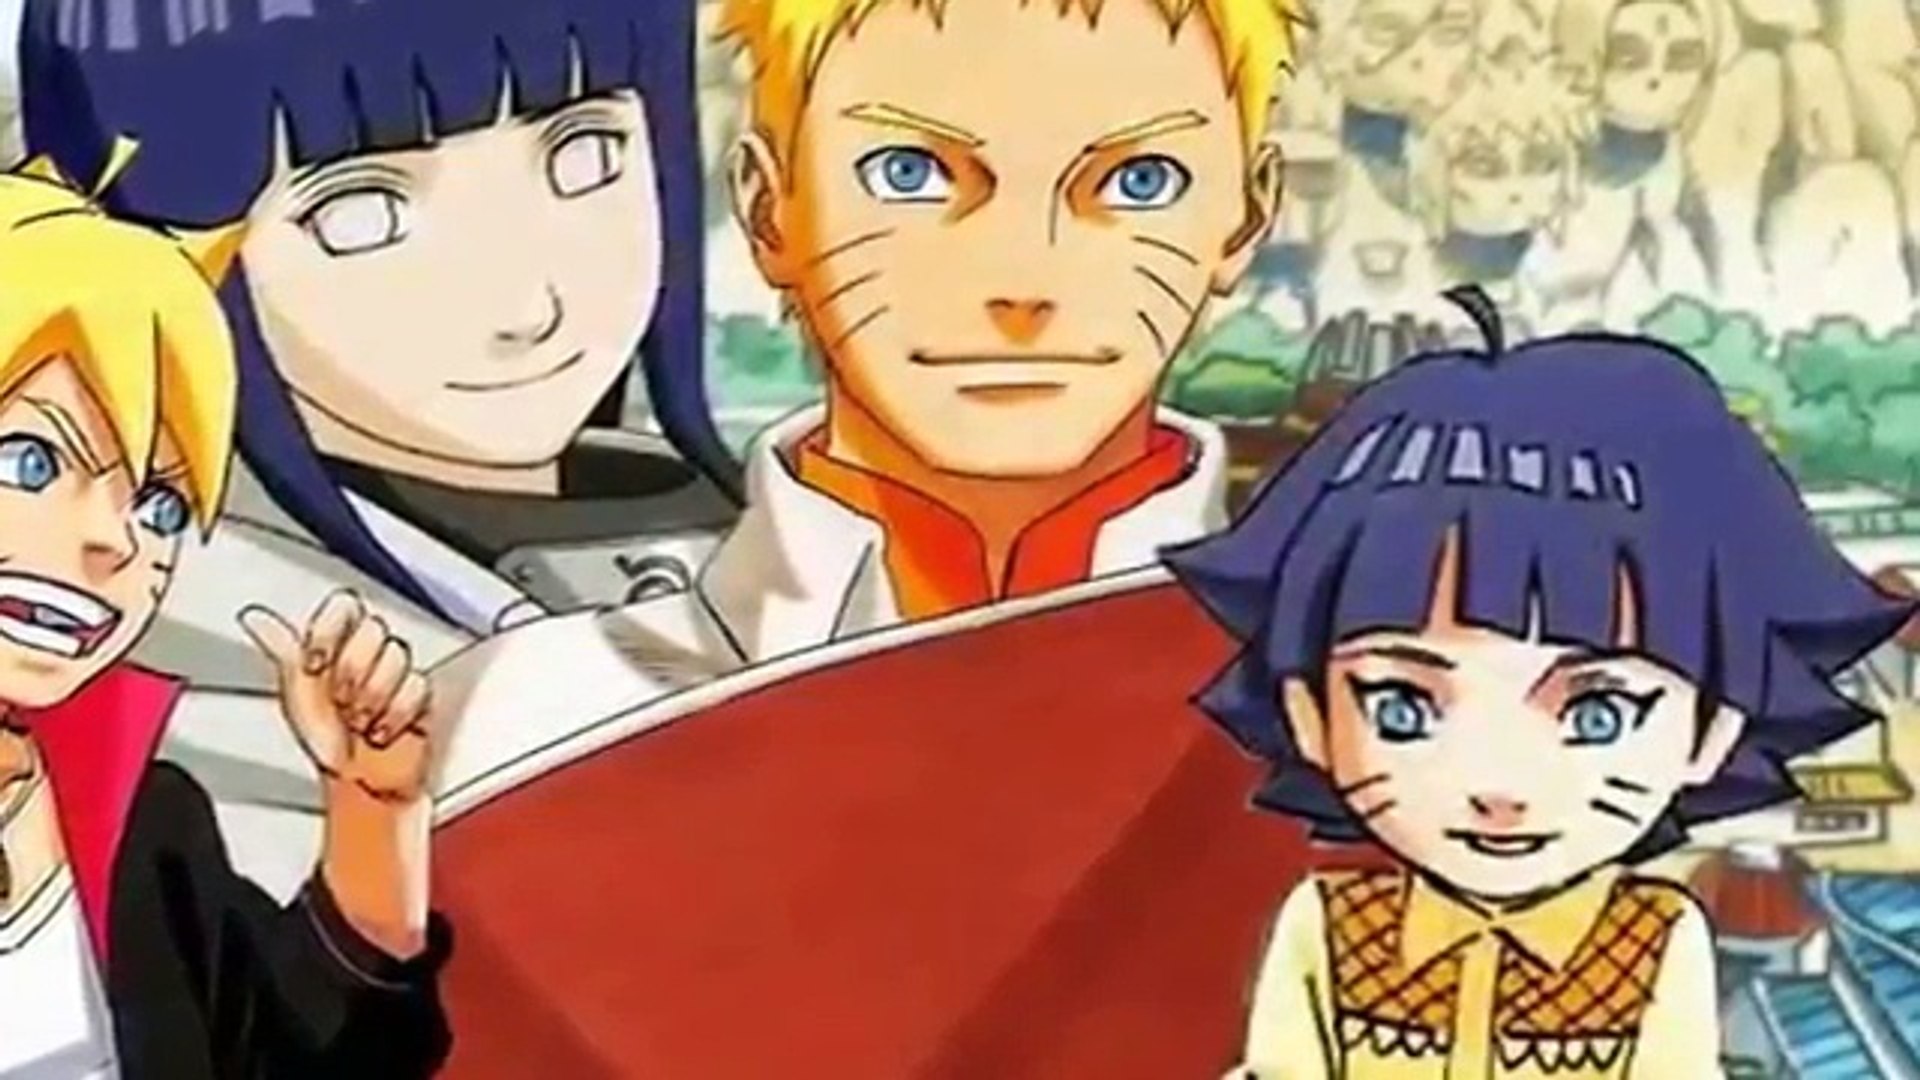 El Día que Naruto se Convierte en Hokage (Ova Boruto The Movie) on Make a  GIF